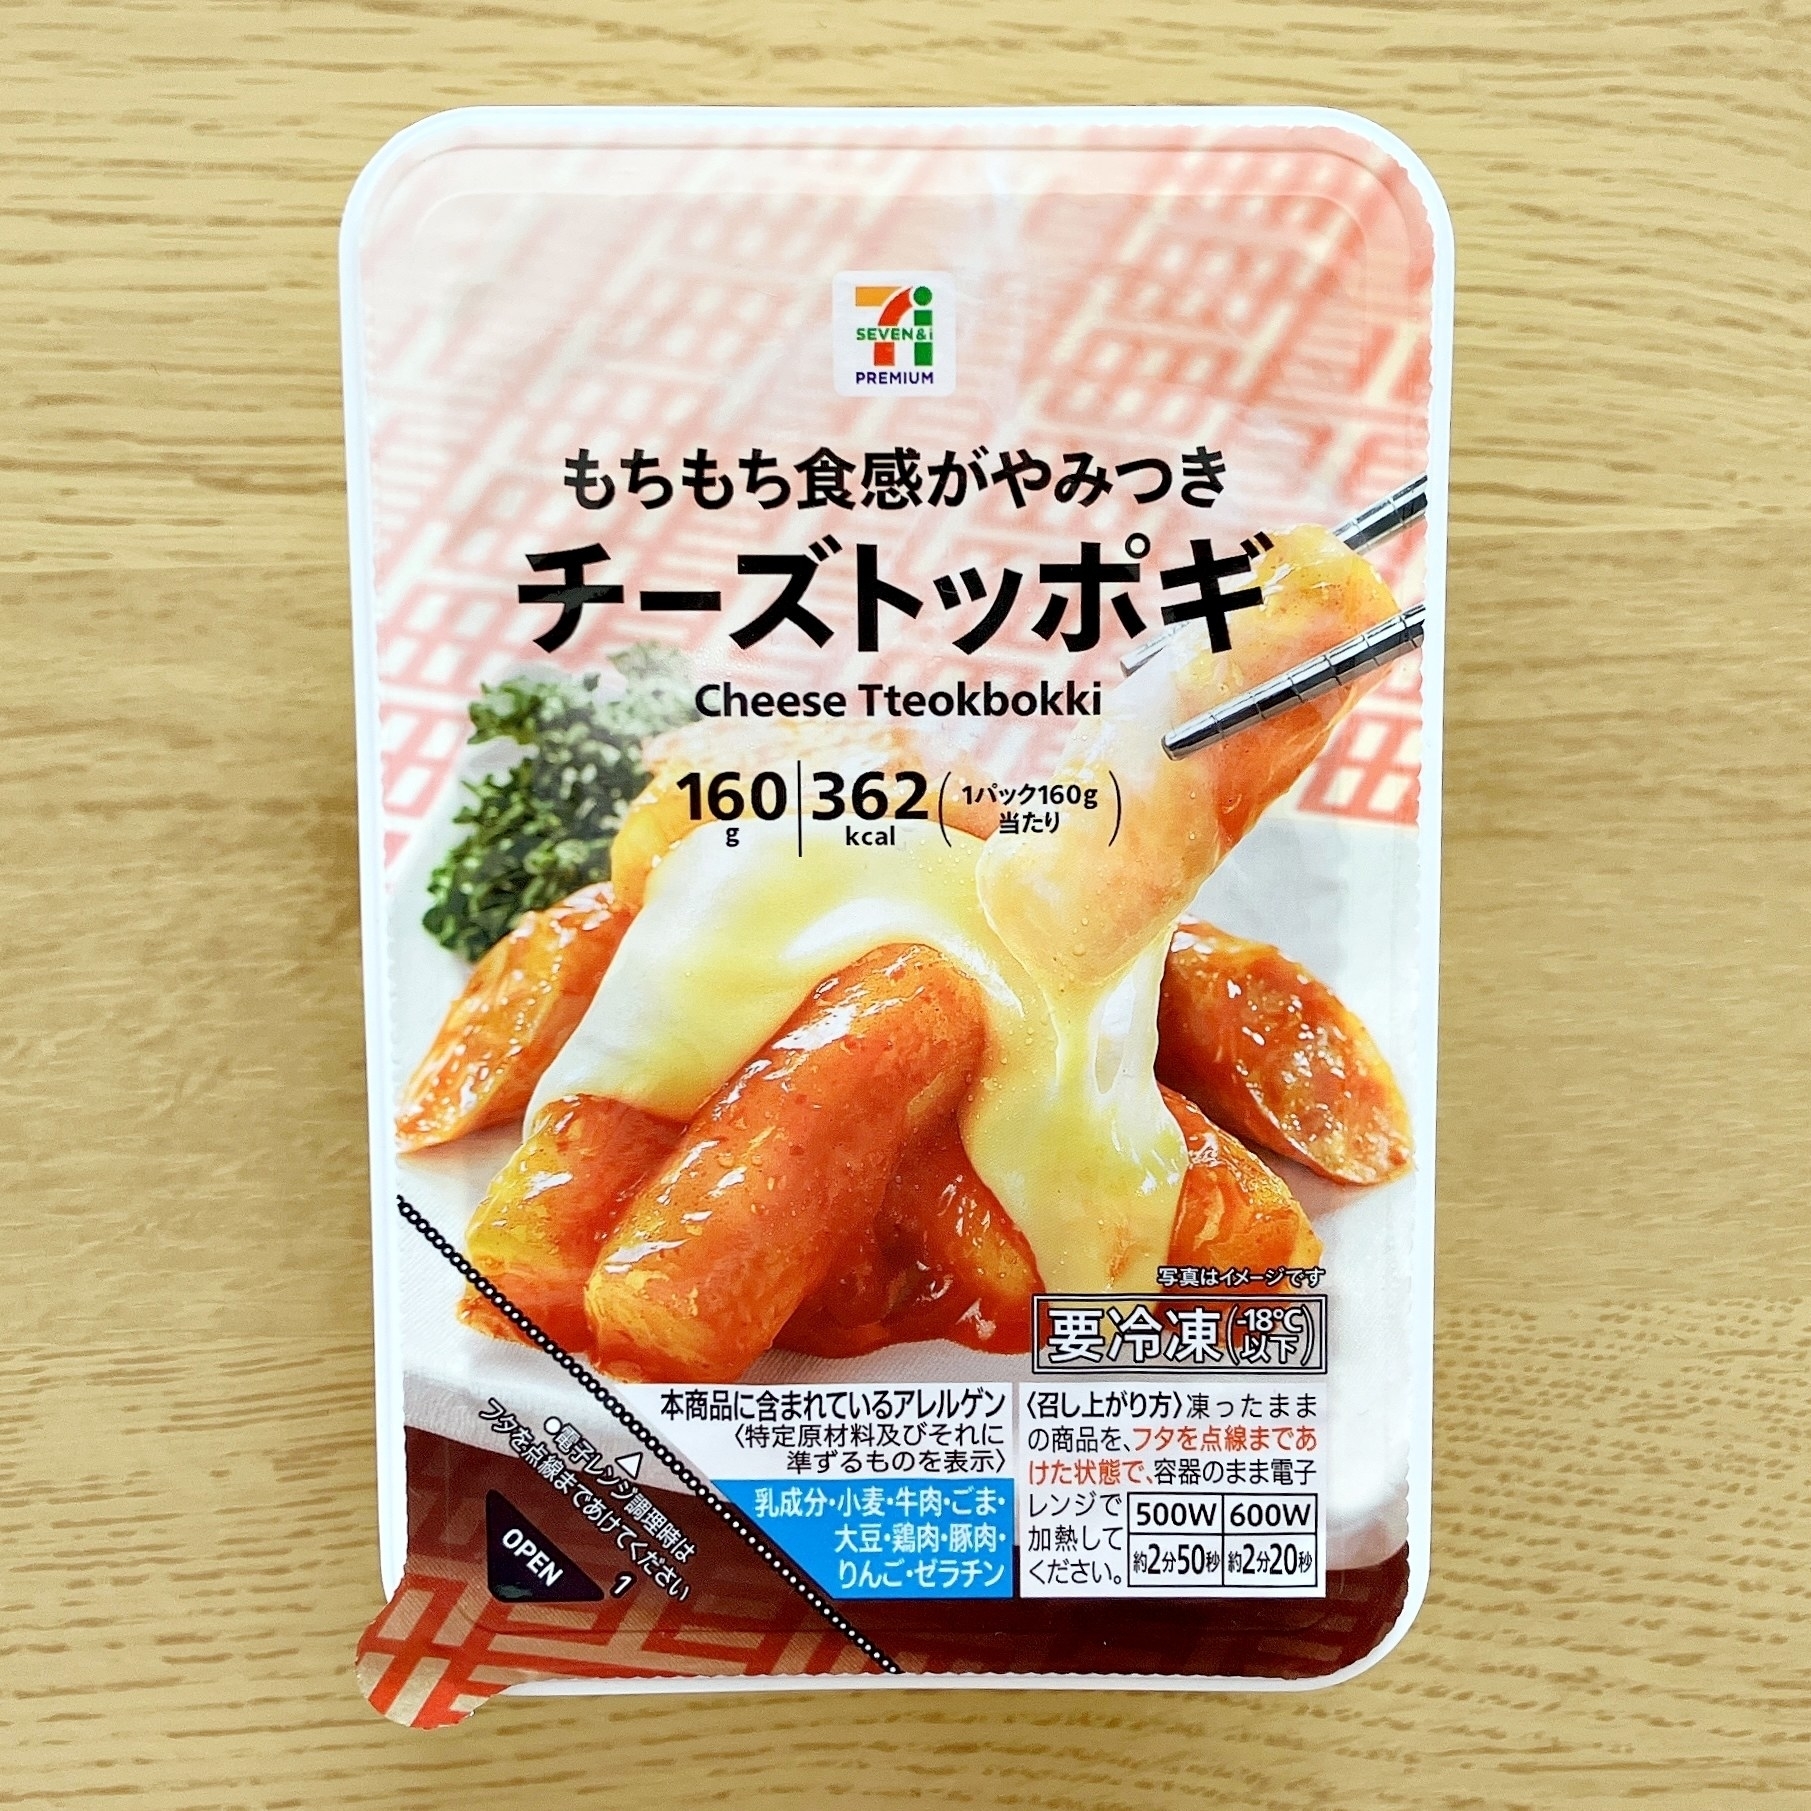 セブン‐イレブンのオススメの冷凍食品「7プレミアム チーズトッポギ」